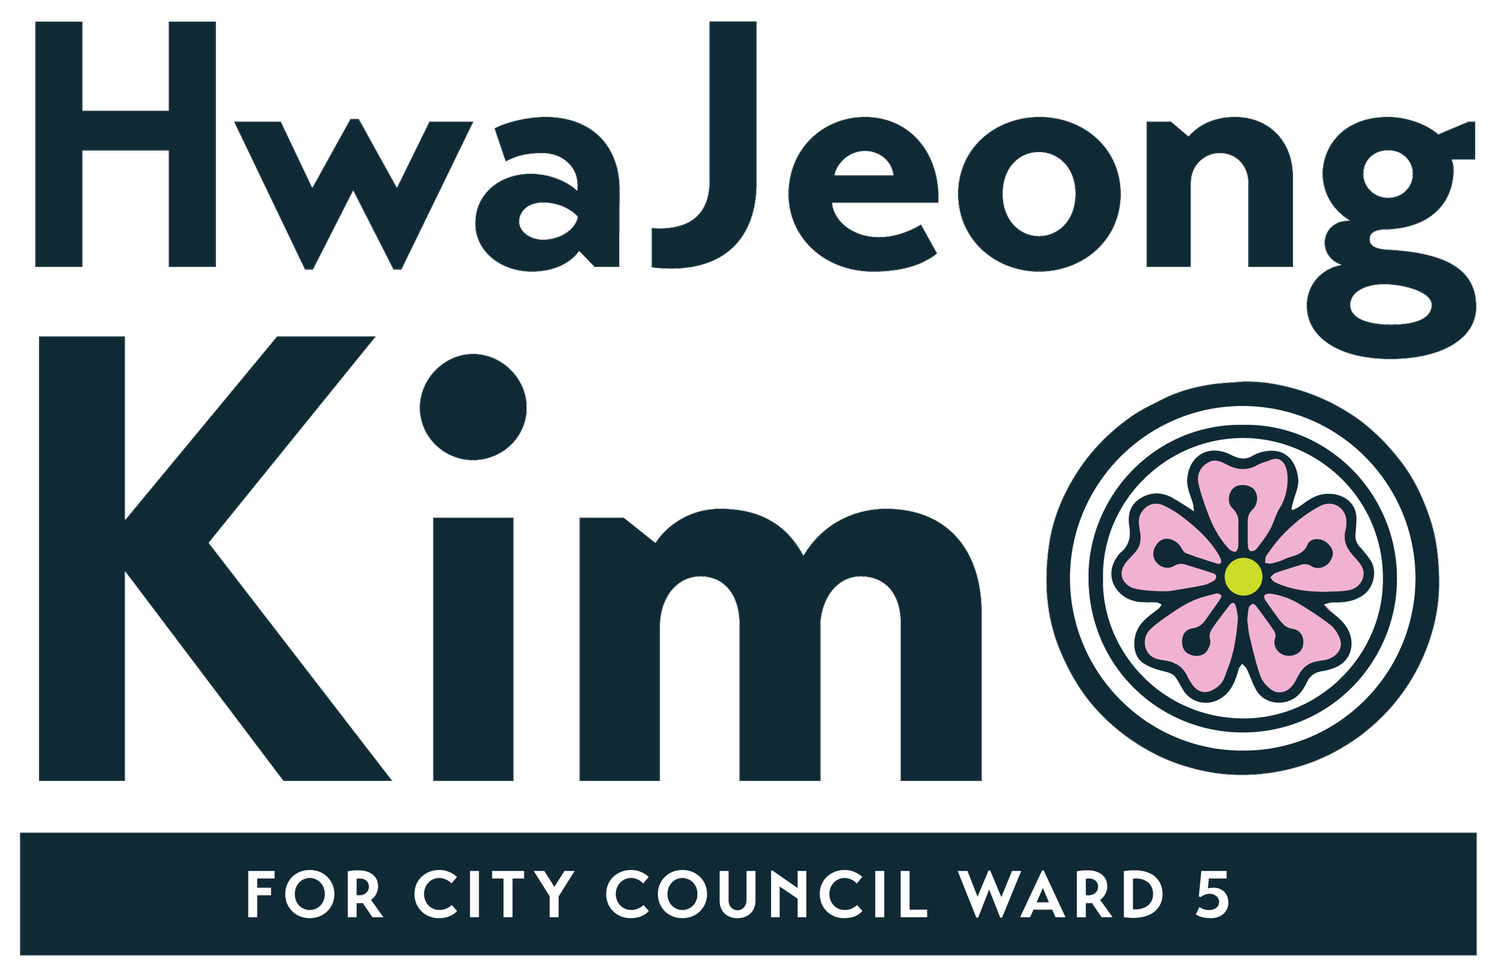 Hwa Jeong Kim for Ward 5 City Council